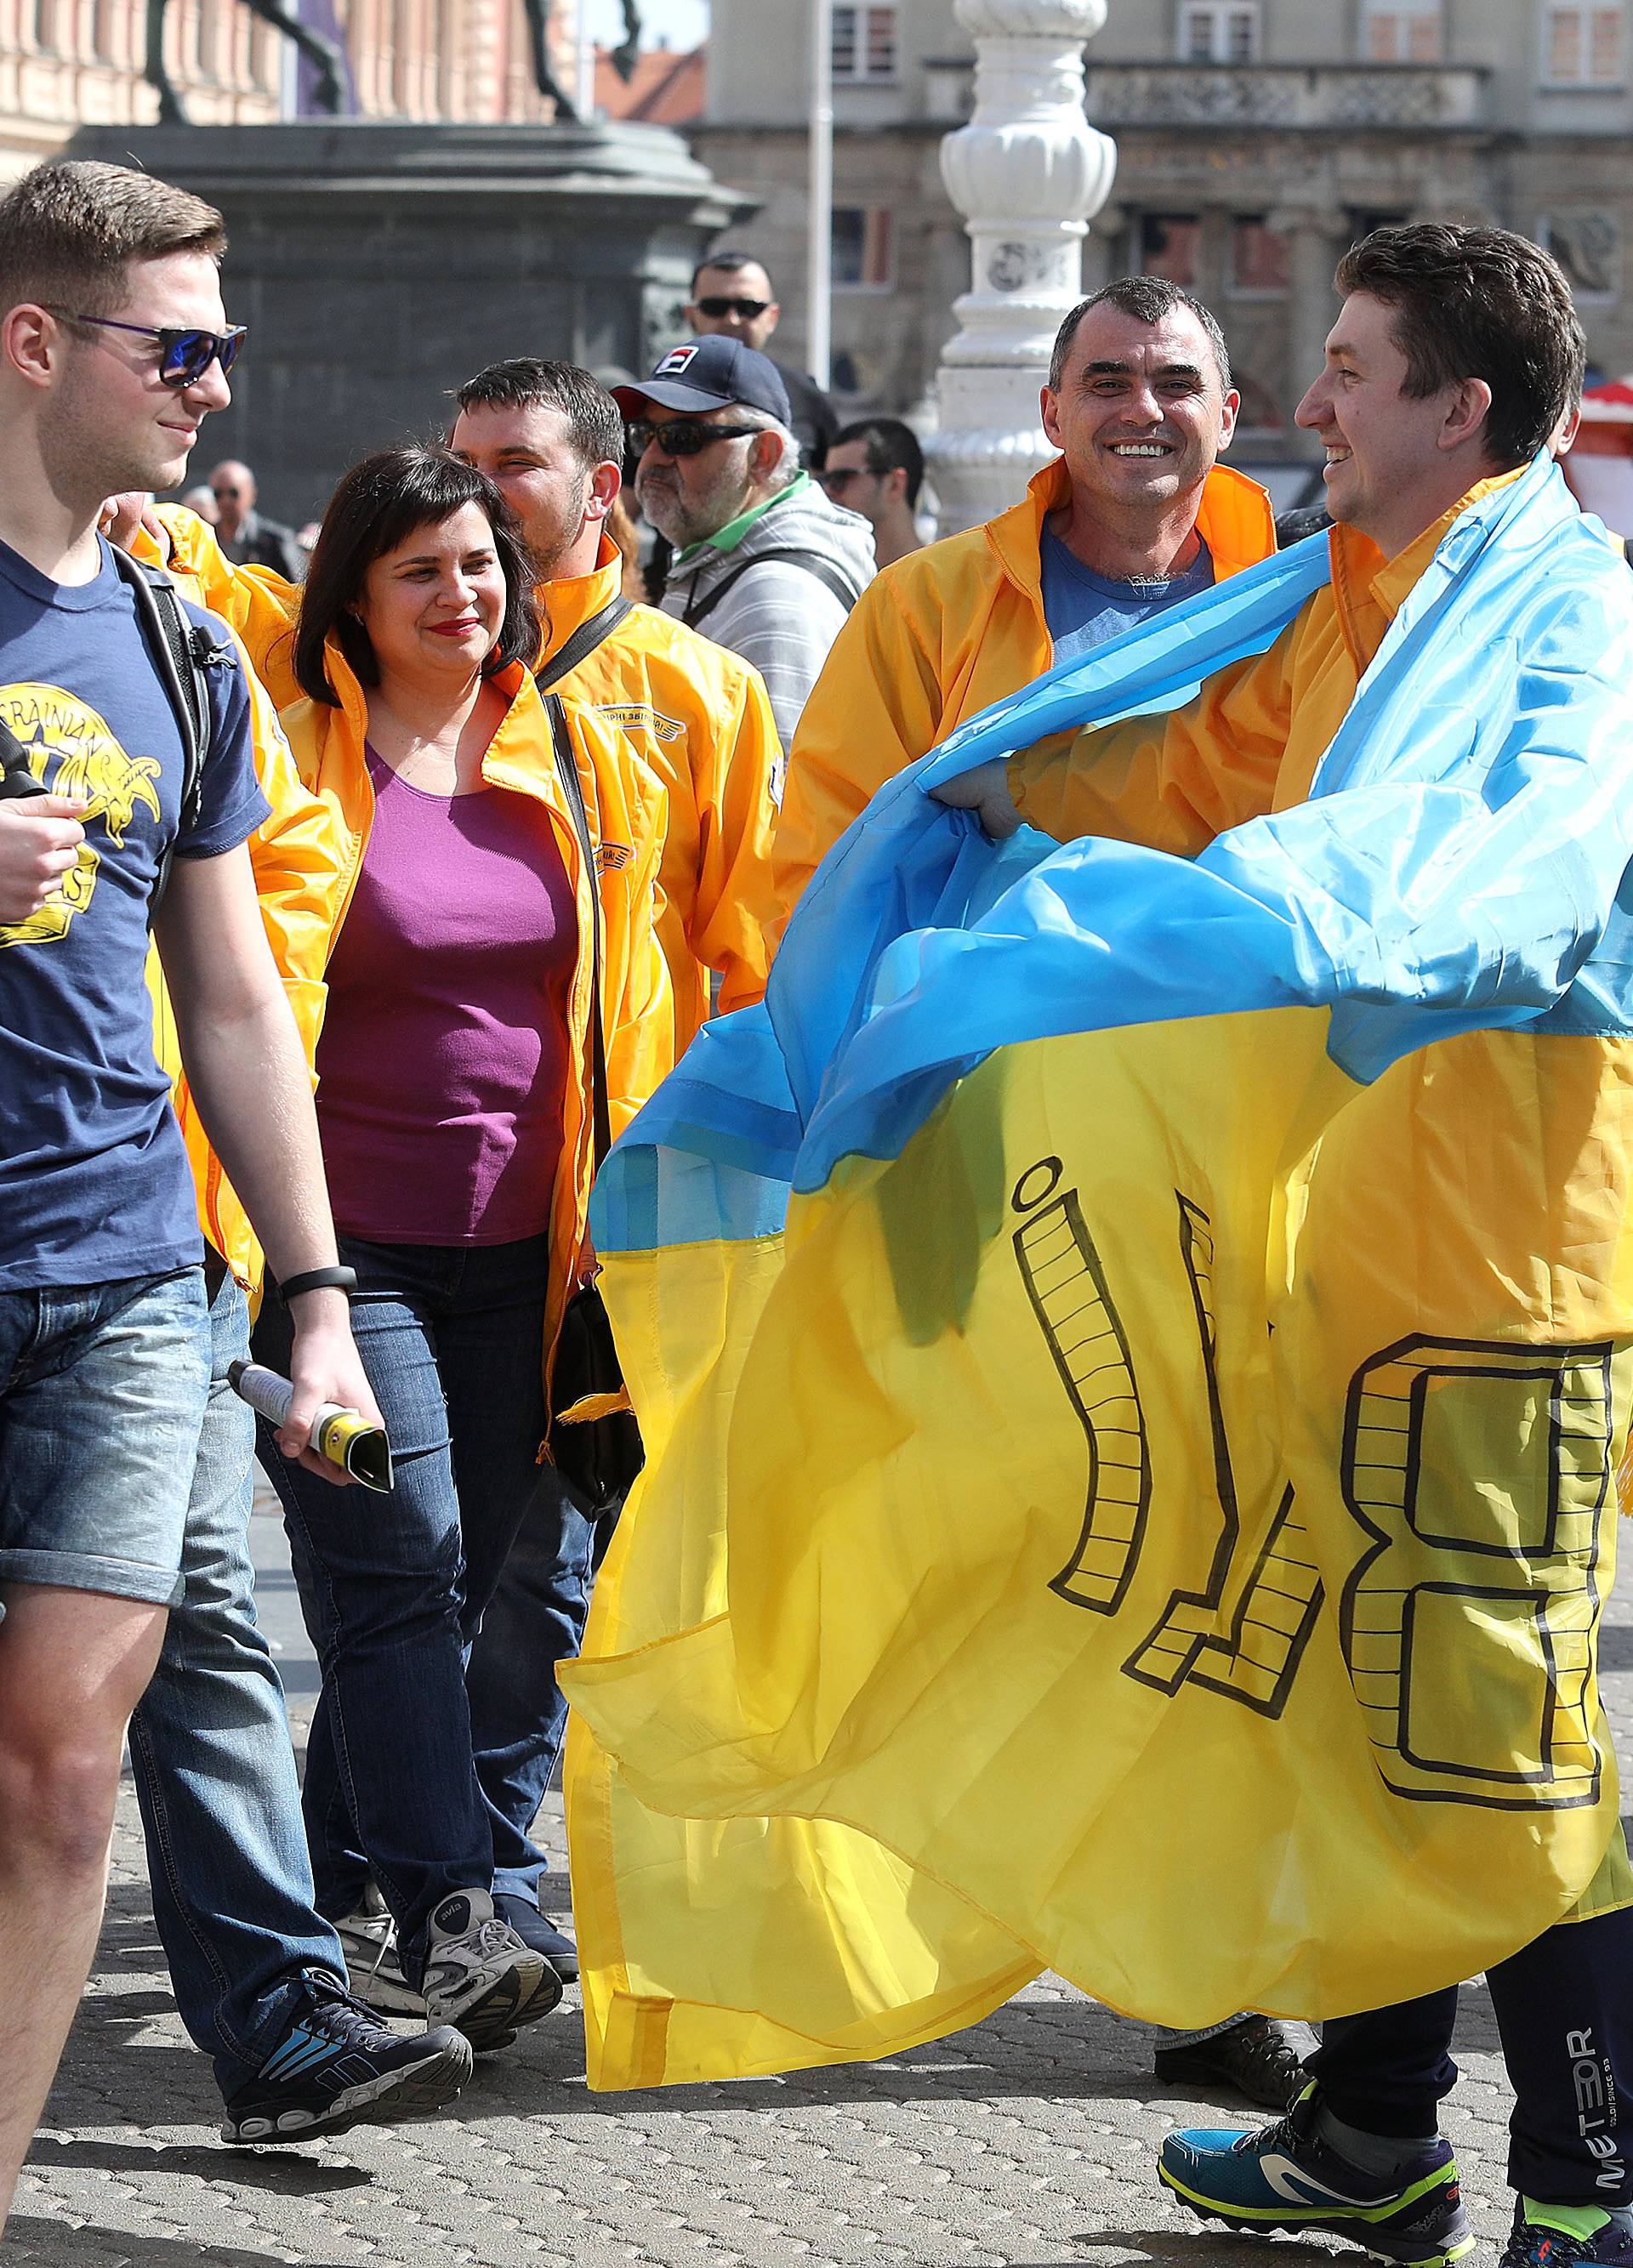 Kreće zagrijavanje: Raspjevani Ukrajinci okupirali centar grada